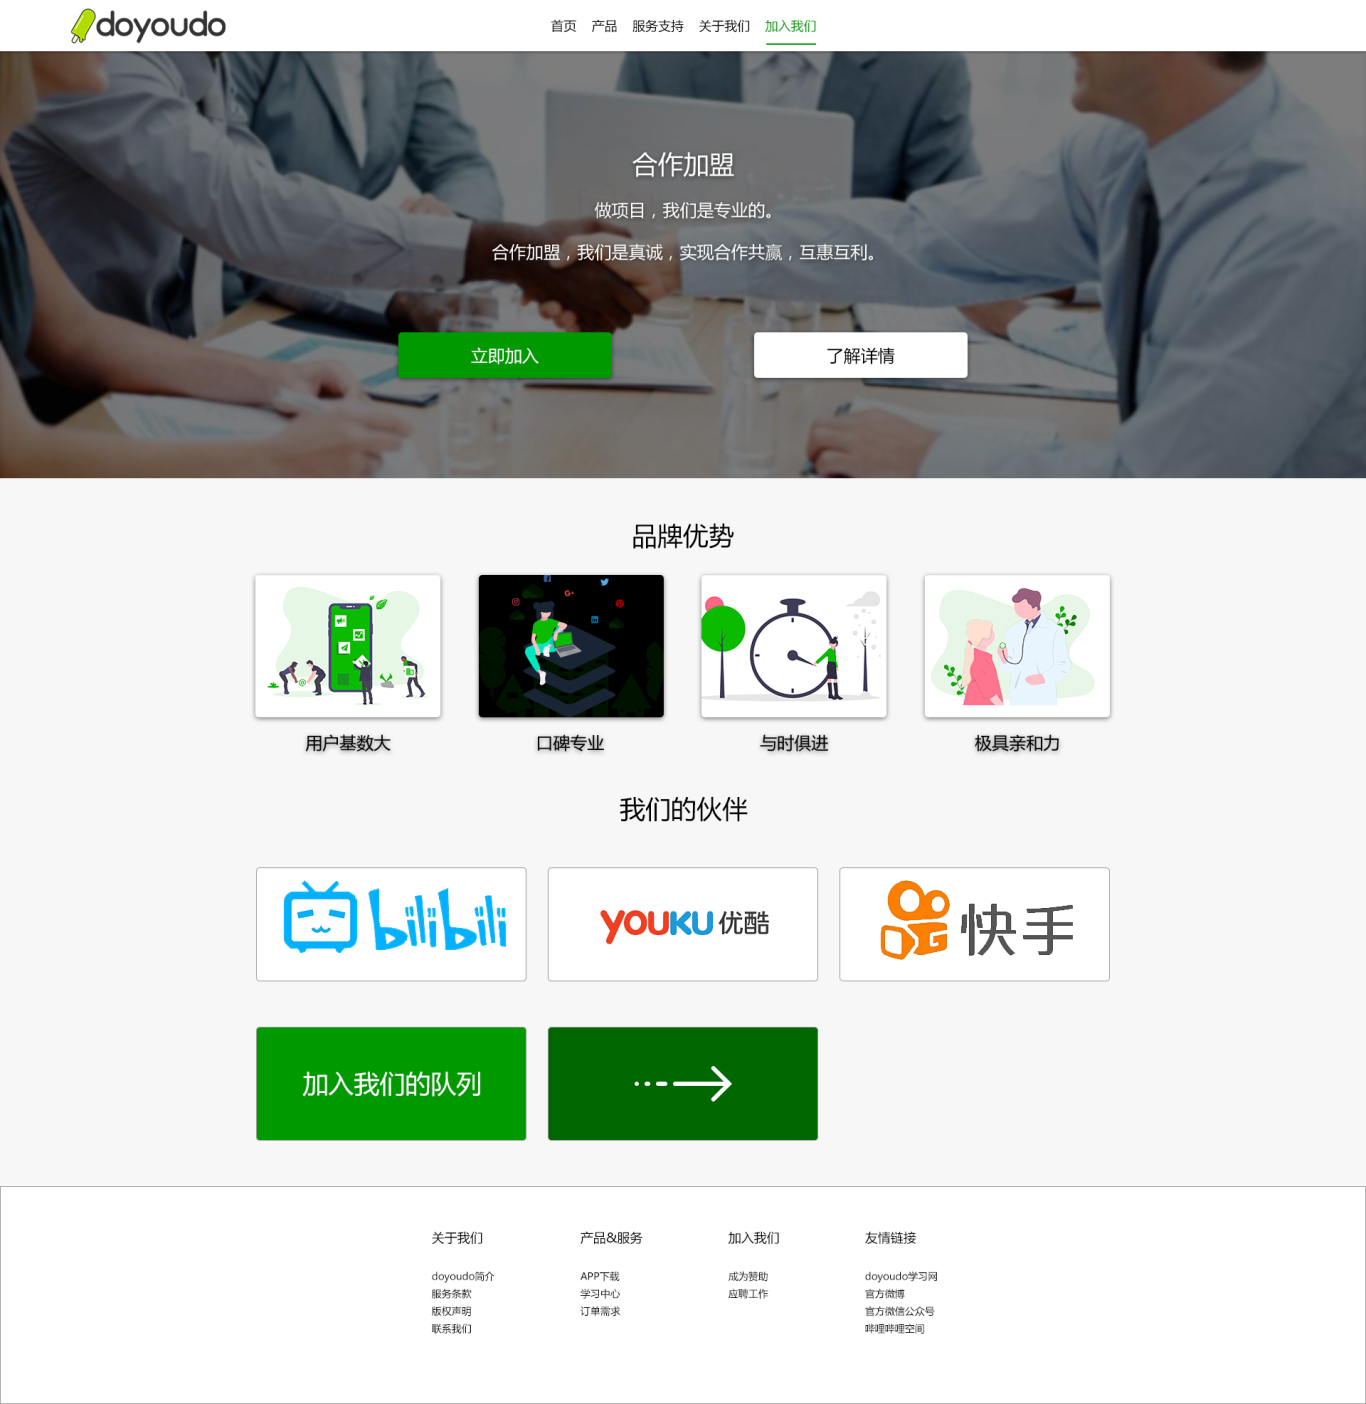 北京我也爱你们科技有限公司-doyoudo官网设计图6